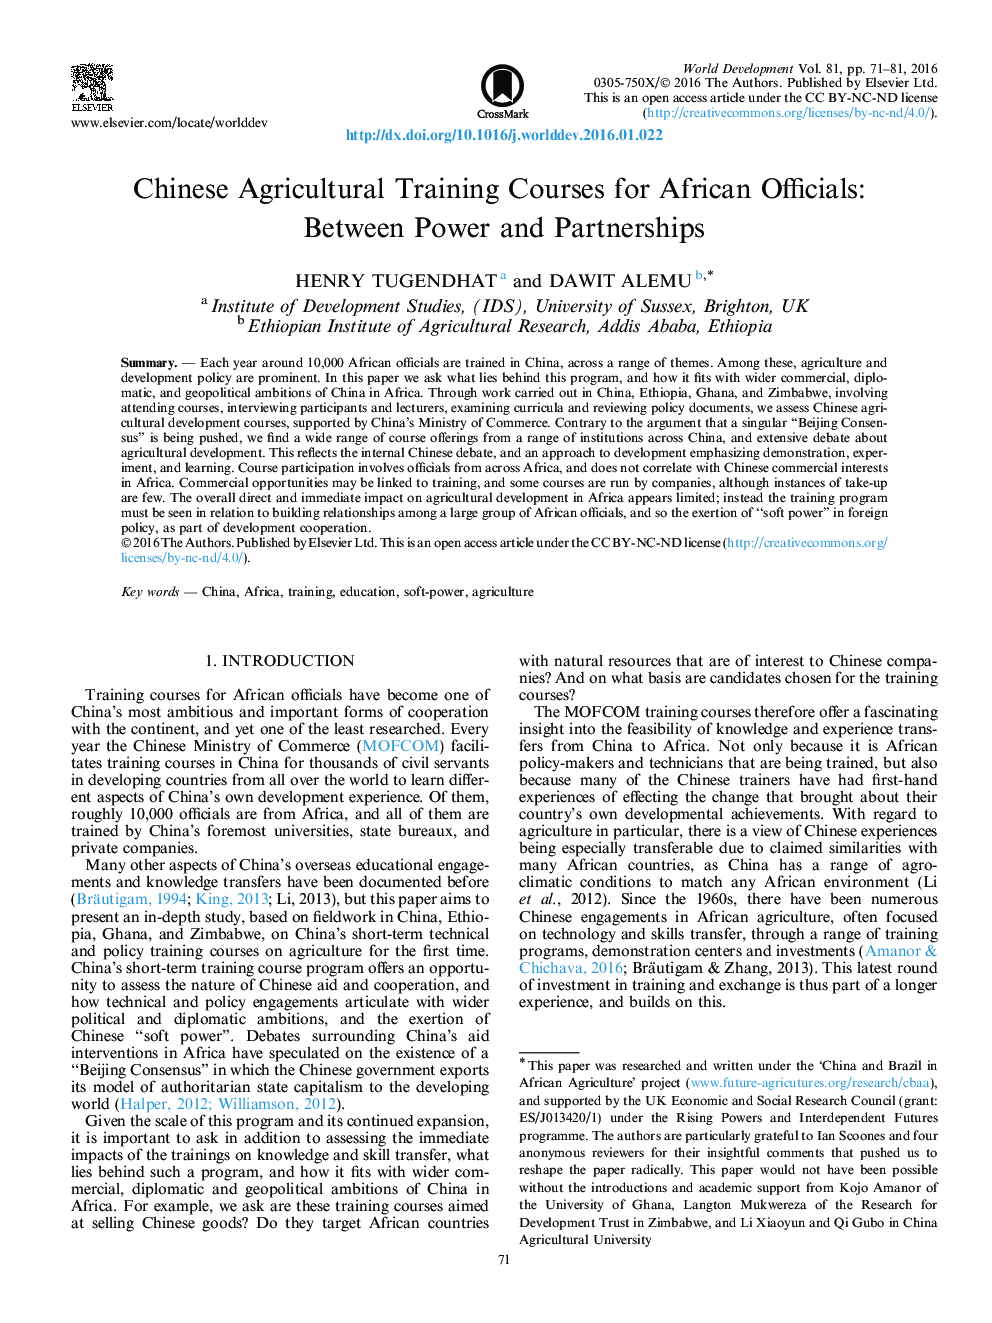 دوره های آموزشی کشاورزی چین برای مقامات آفریقایی: بین قدرت و مشارکت